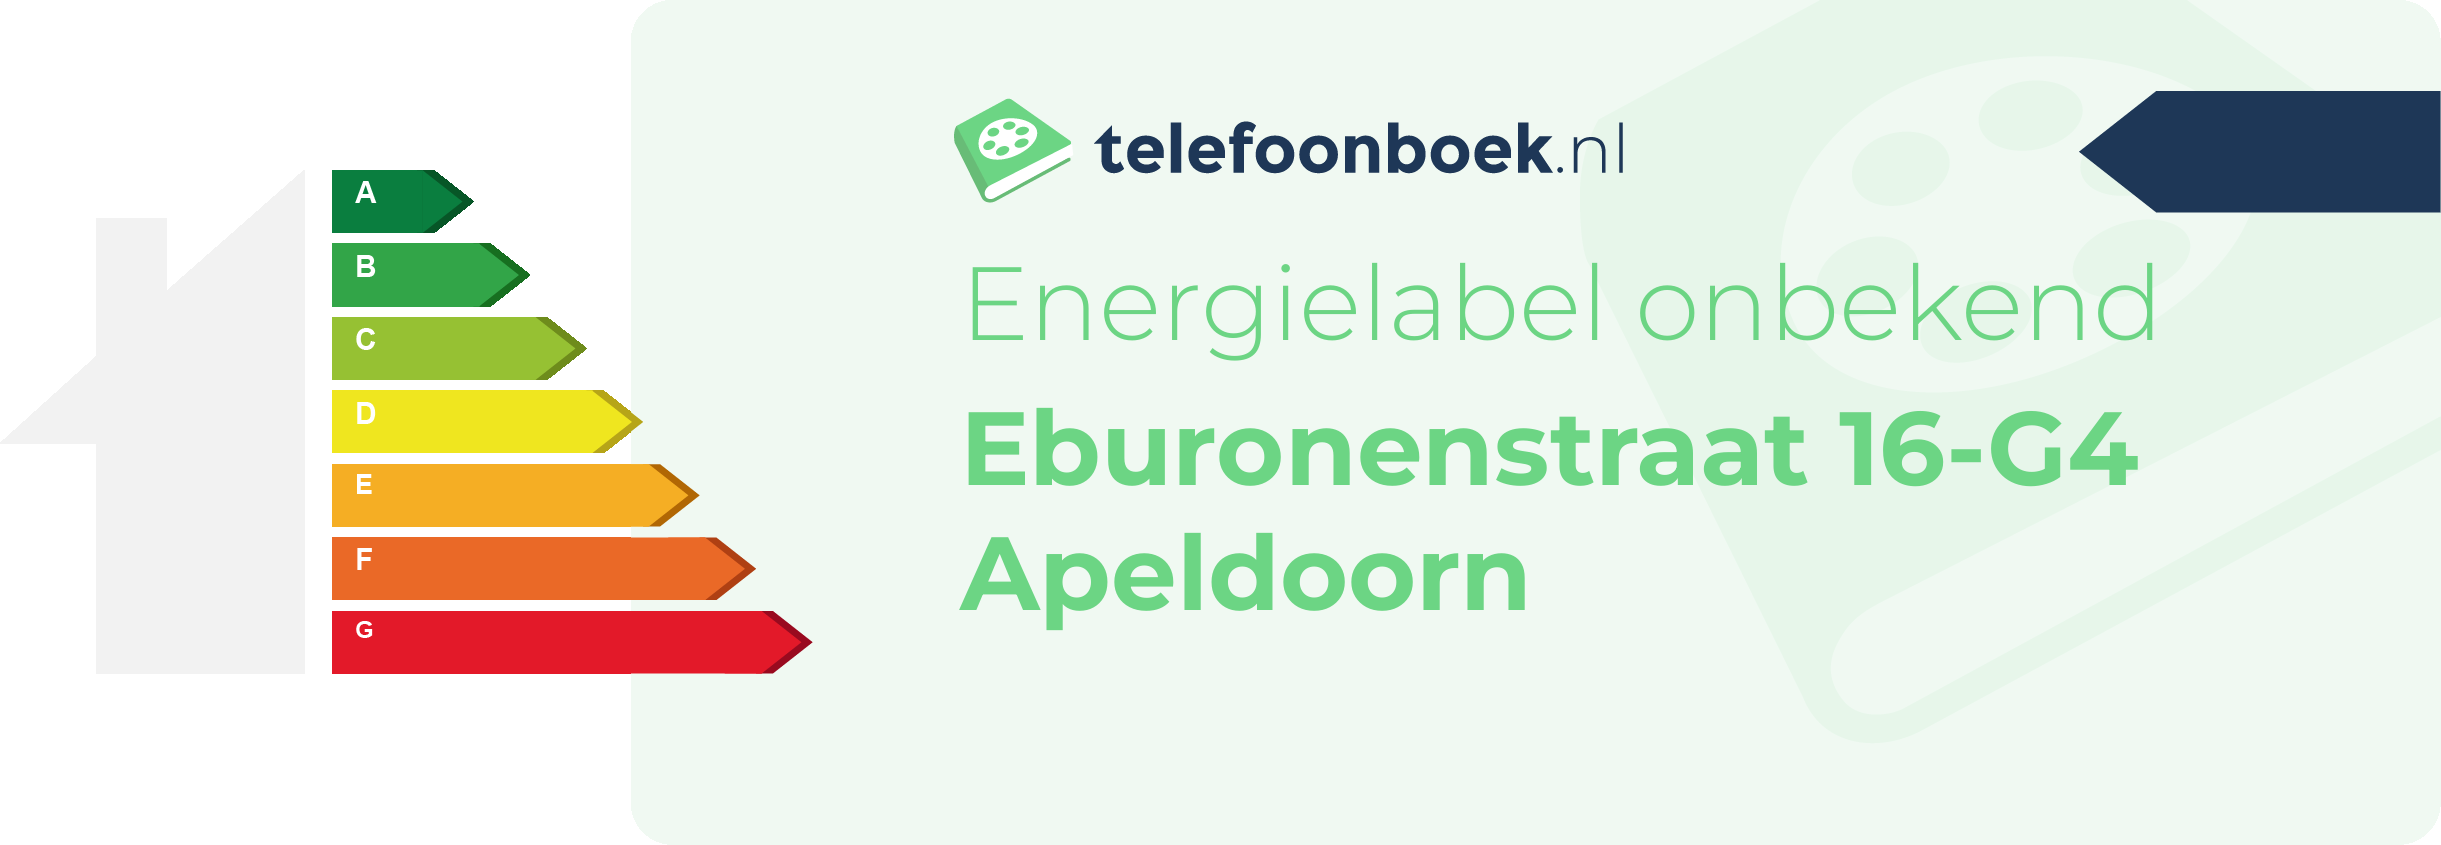 Energielabel Eburonenstraat 16-G4 Apeldoorn